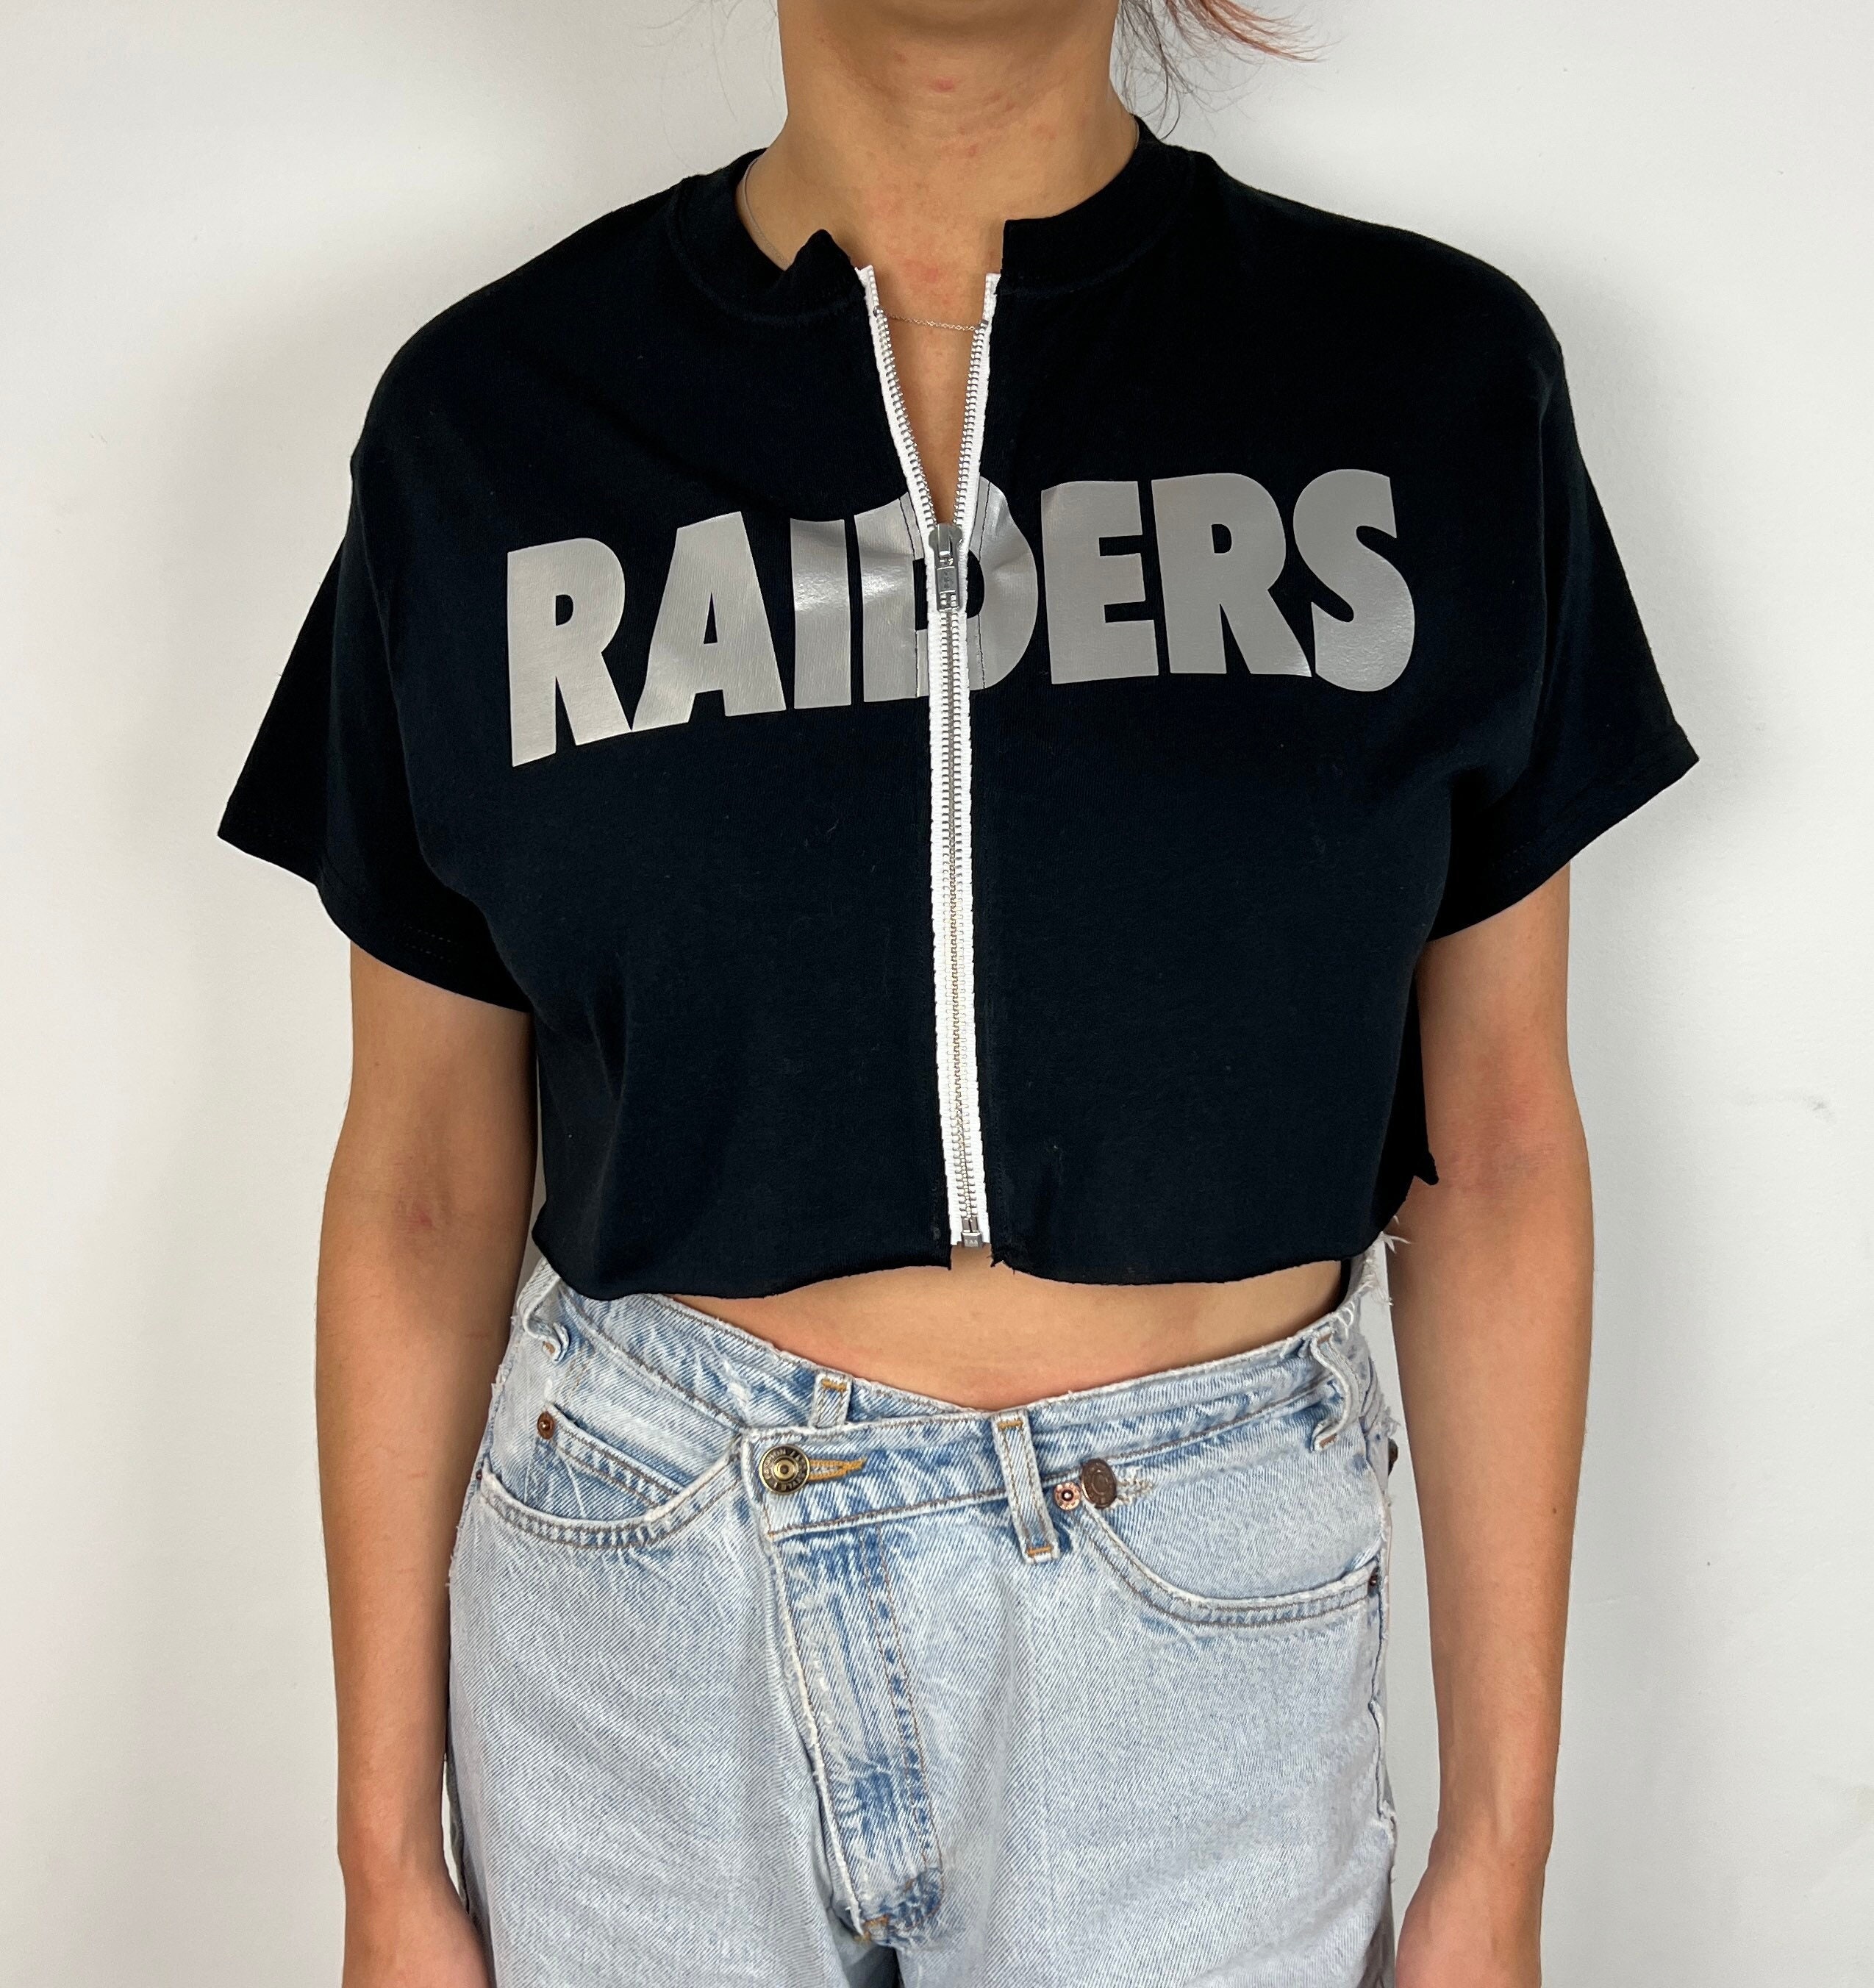 Las Vegas Raiders Women's Hooded Crop Sweatshirt - Black/White/Grey –  Refried Apparel